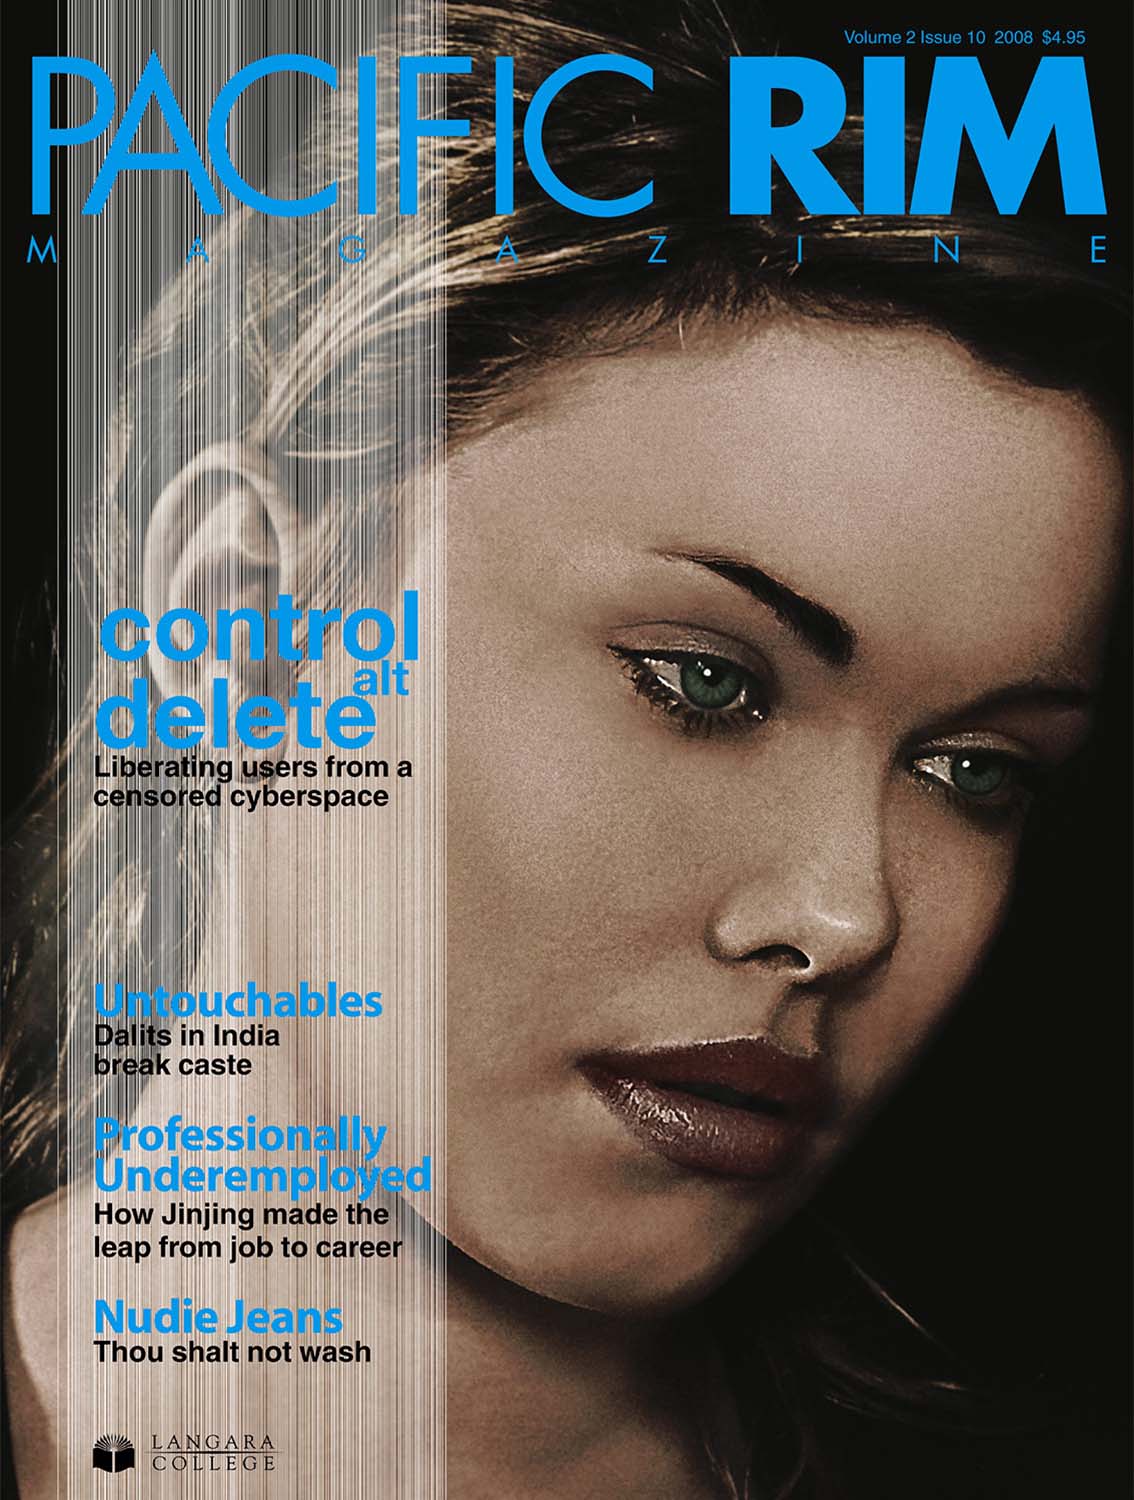 2008 Pacific Rim Cover, Closeup Portrait of Woman's Face.